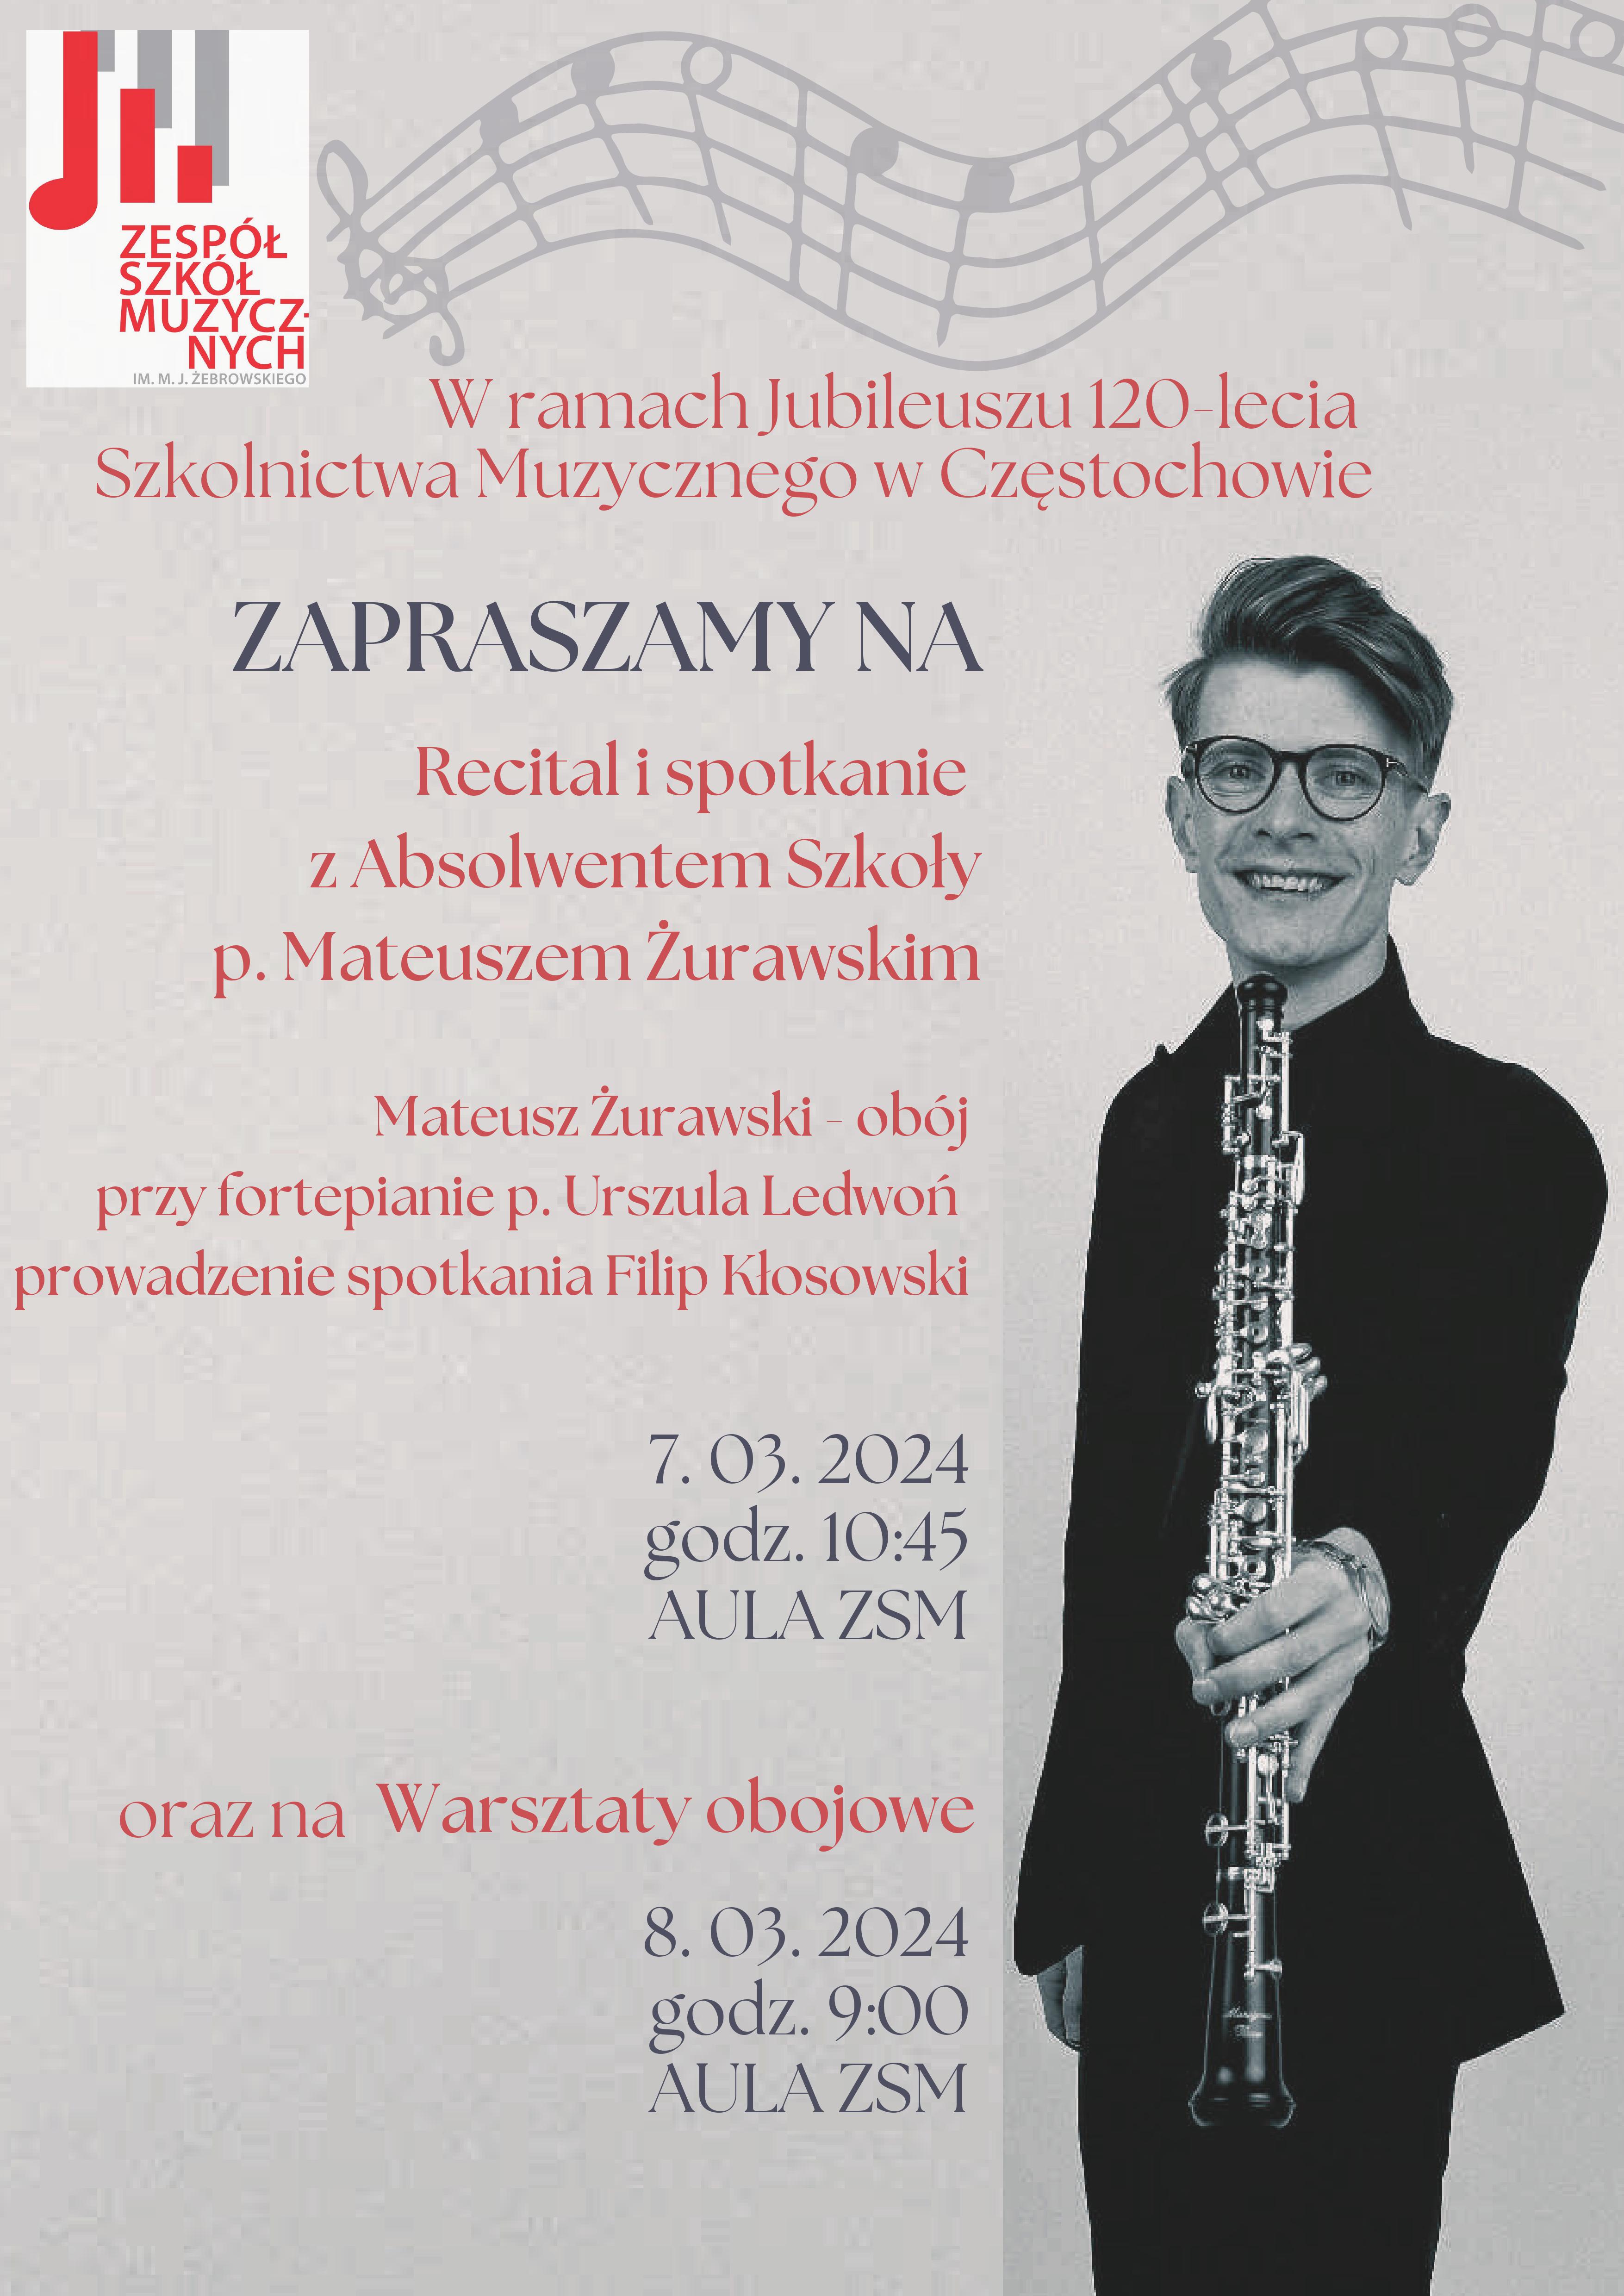 Beżowe tło, po lewej logo szkoły, po prawej zdjęcie Mateusza Żurawskiego, informacje dotyczące spotkania z absolwentem, jego recitalu i warsztatach